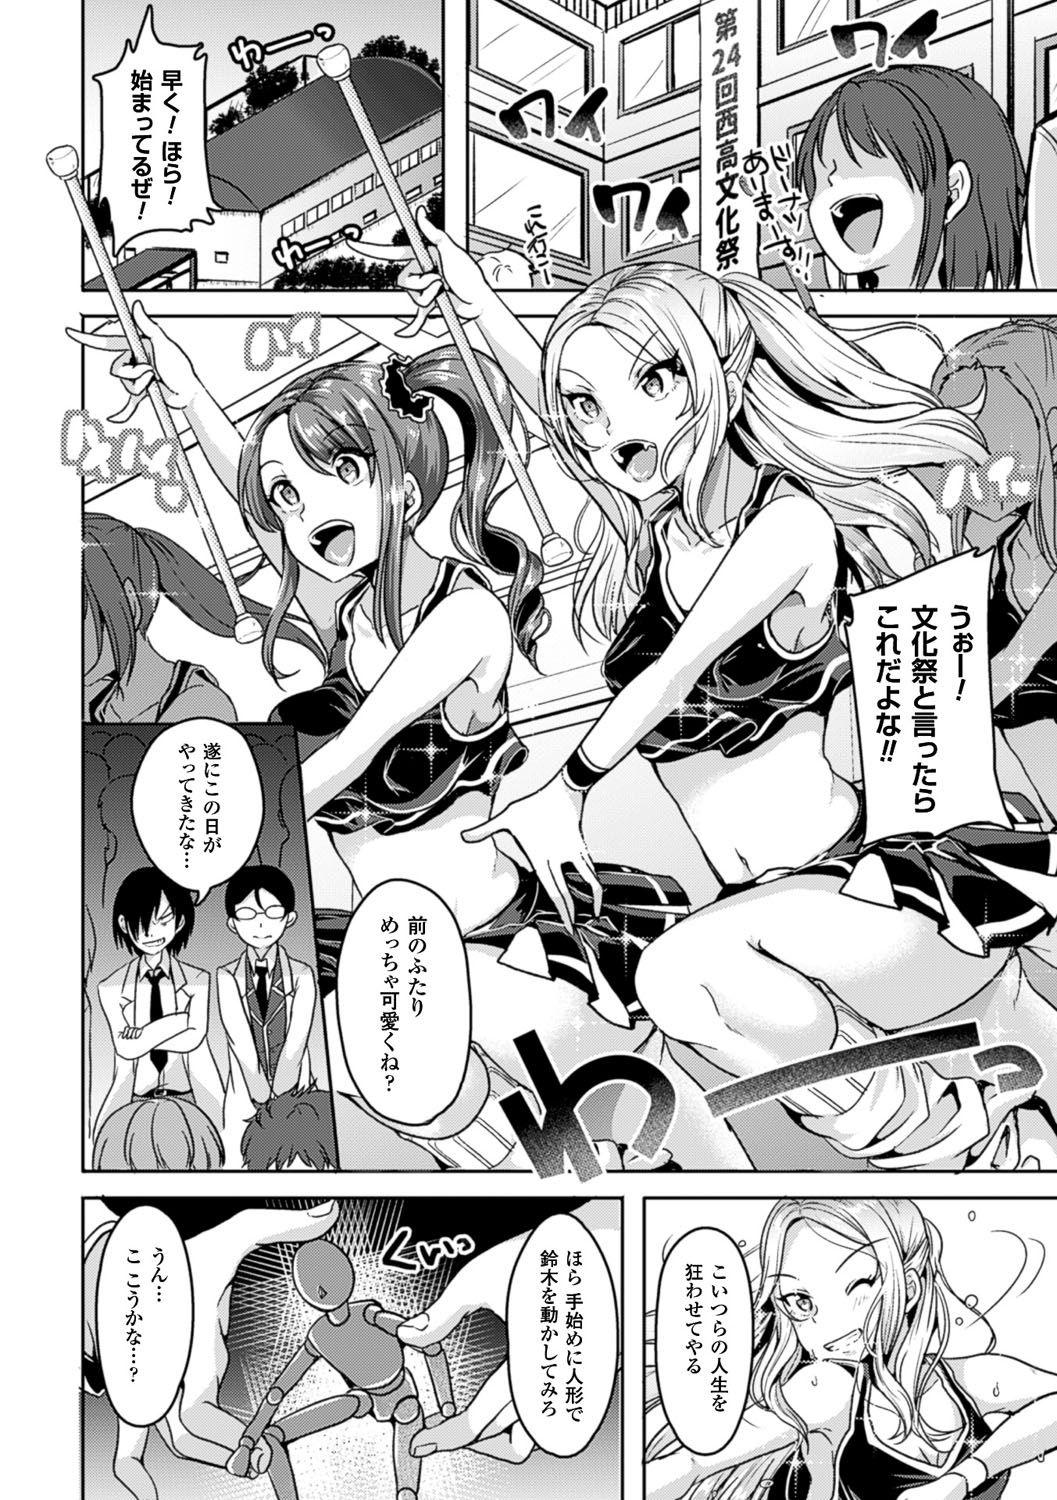 Tributo Bessatsu Comic Unreal Ijimekko ni Fushigi na Chikara de Fukushuu Hen Digital Ban Vol.1 Kiss - Page 7